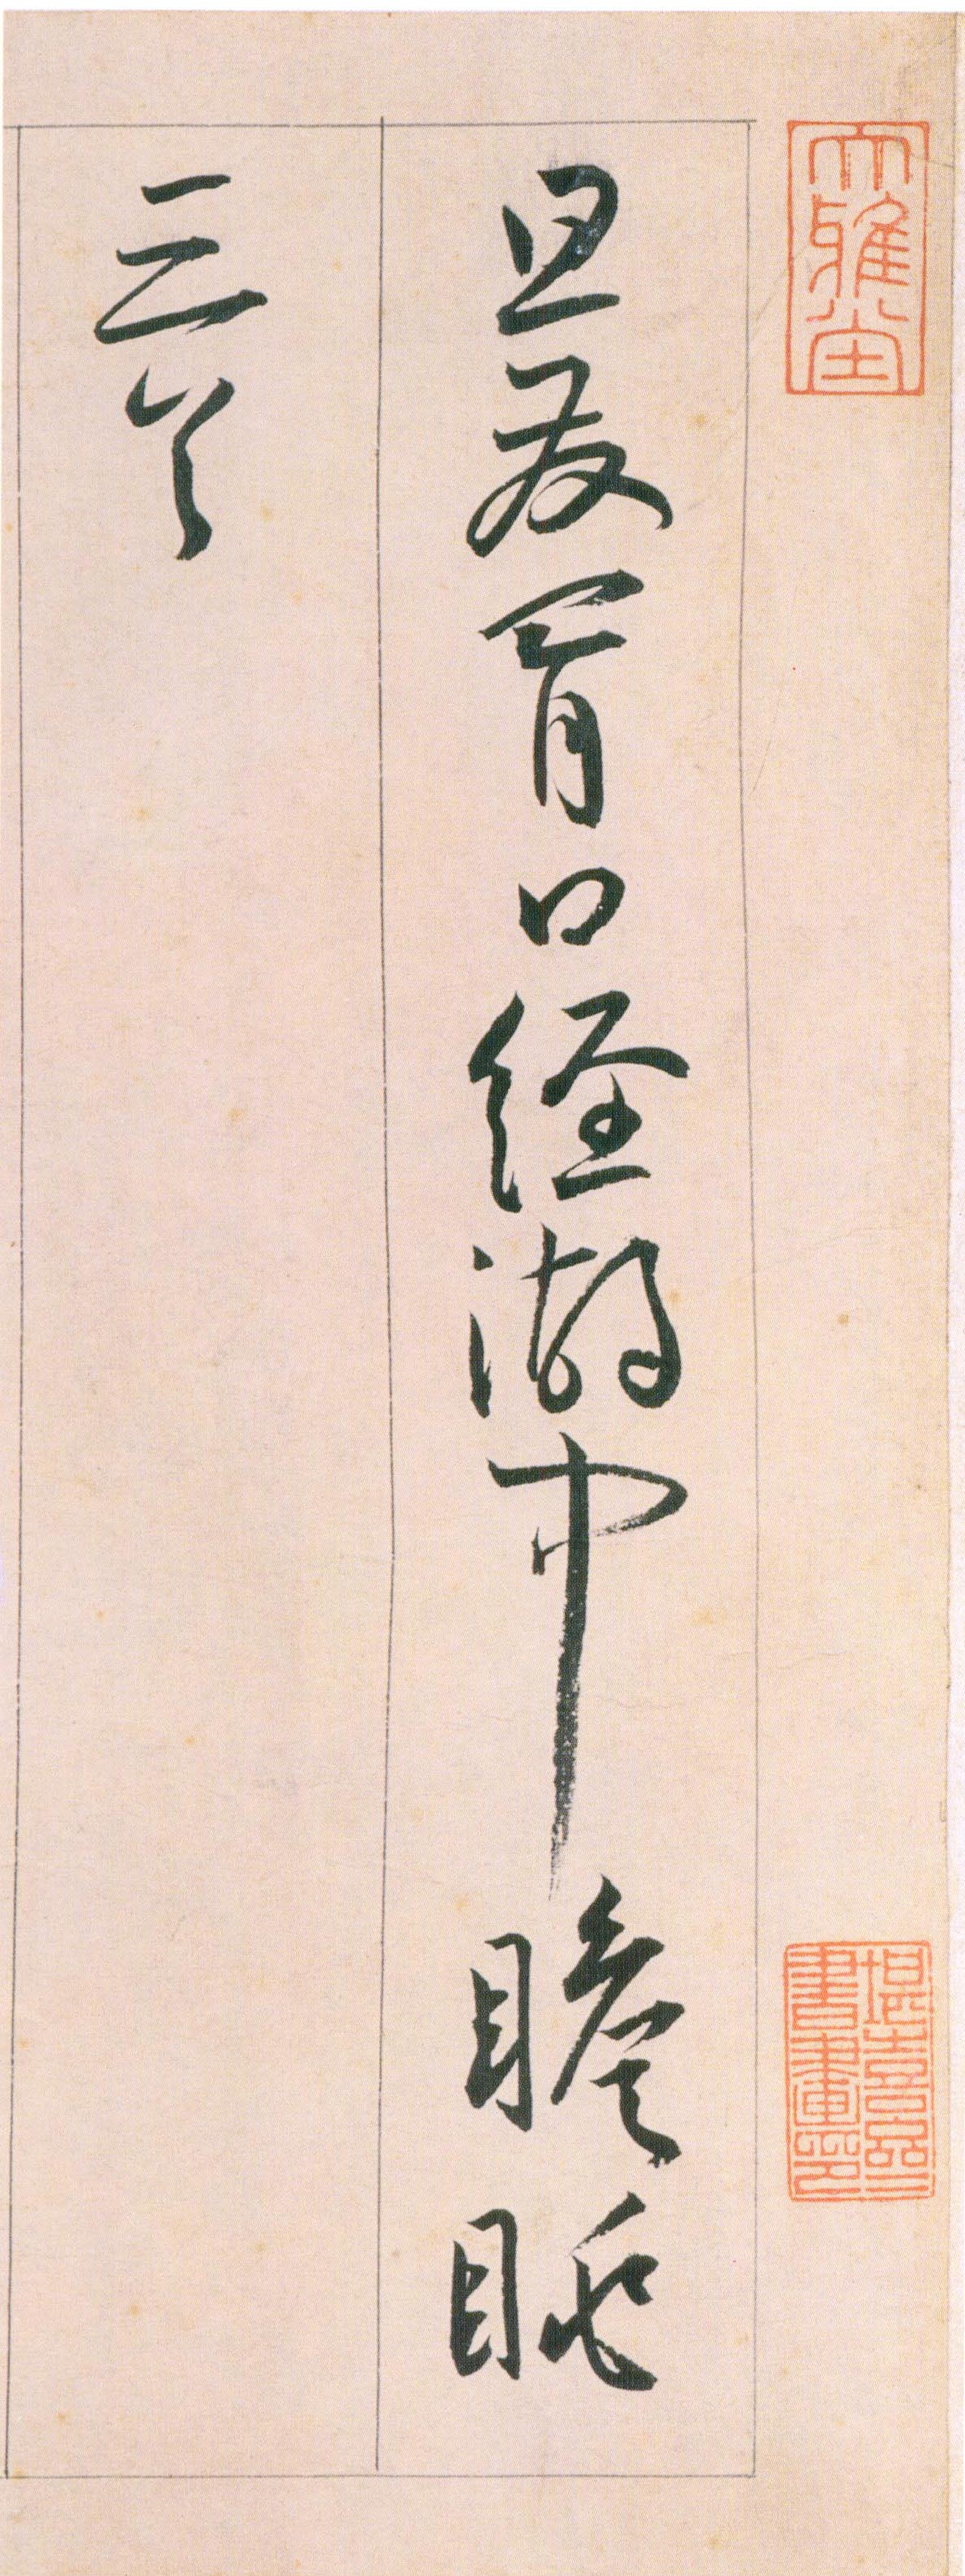 王宠《自书游包山诗》卷-天津艺术博物院藏(图1)